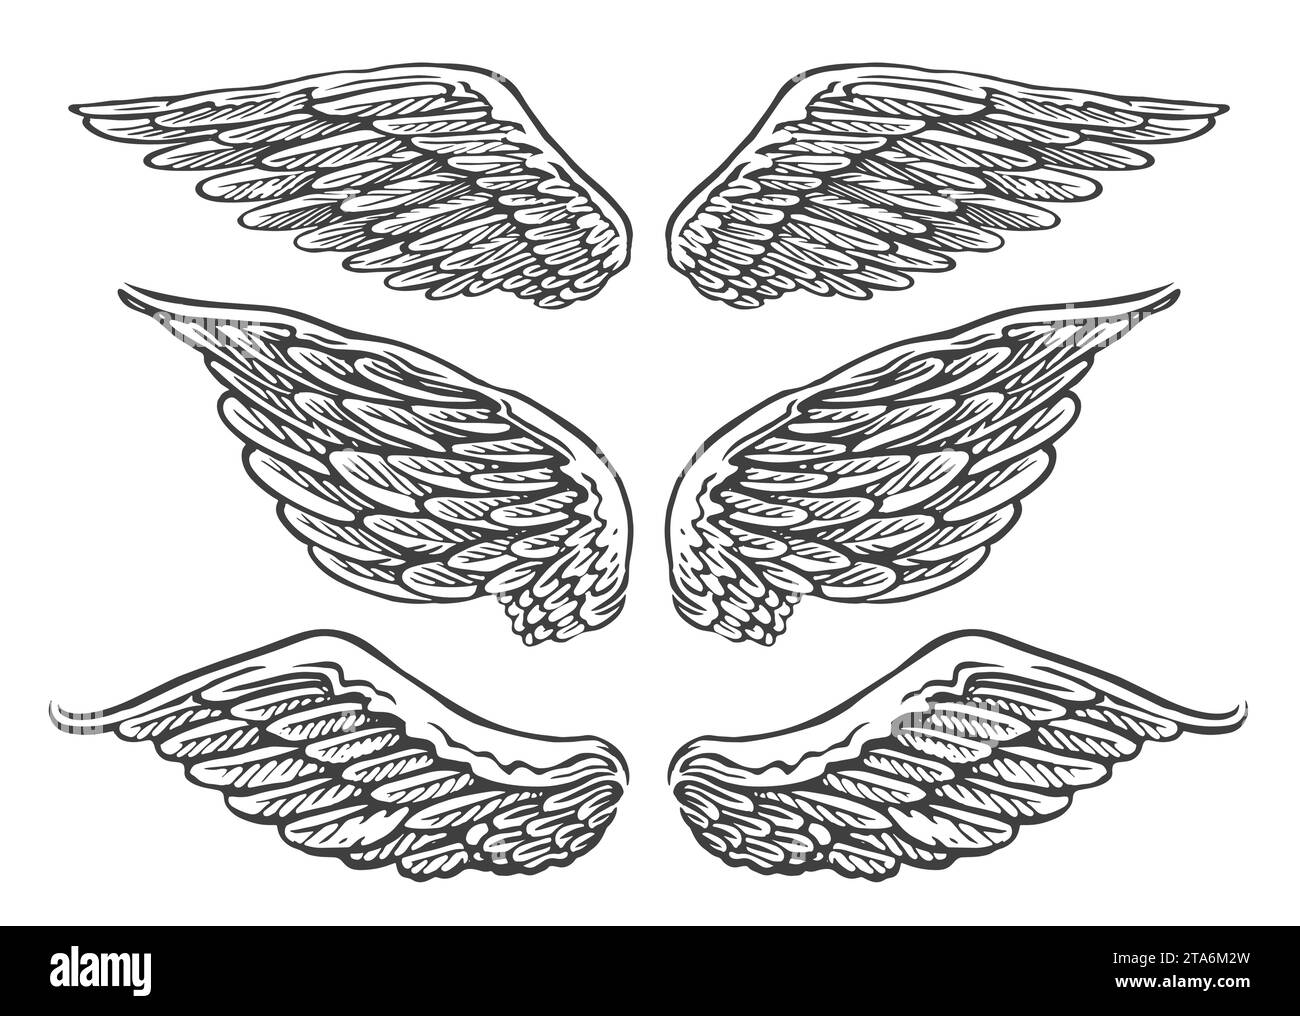 Ensemble de paires dessinées à la main d'ailes d'ange ou d'oiseau de différentes formes en position ouverte. Illustration vectorielle vintage Illustration de Vecteur